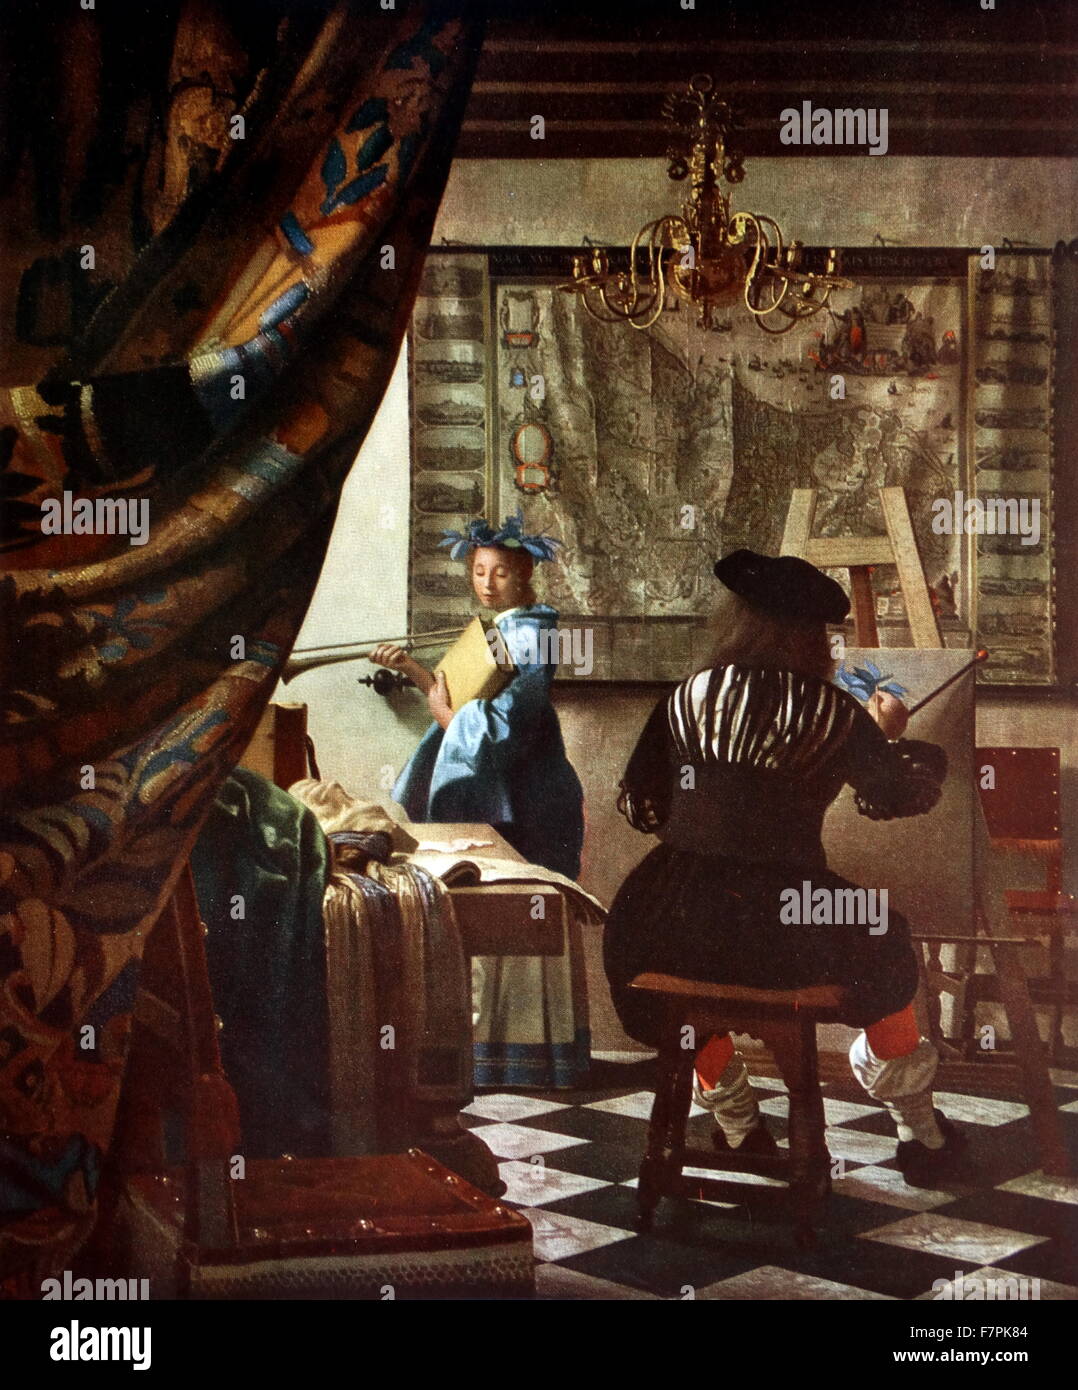 Gemälde mit dem Titel "The Artist Studio" niederländischen Malers Johannes Vermeer (1632-1675). Vom 17. Jahrhundert Stockfoto